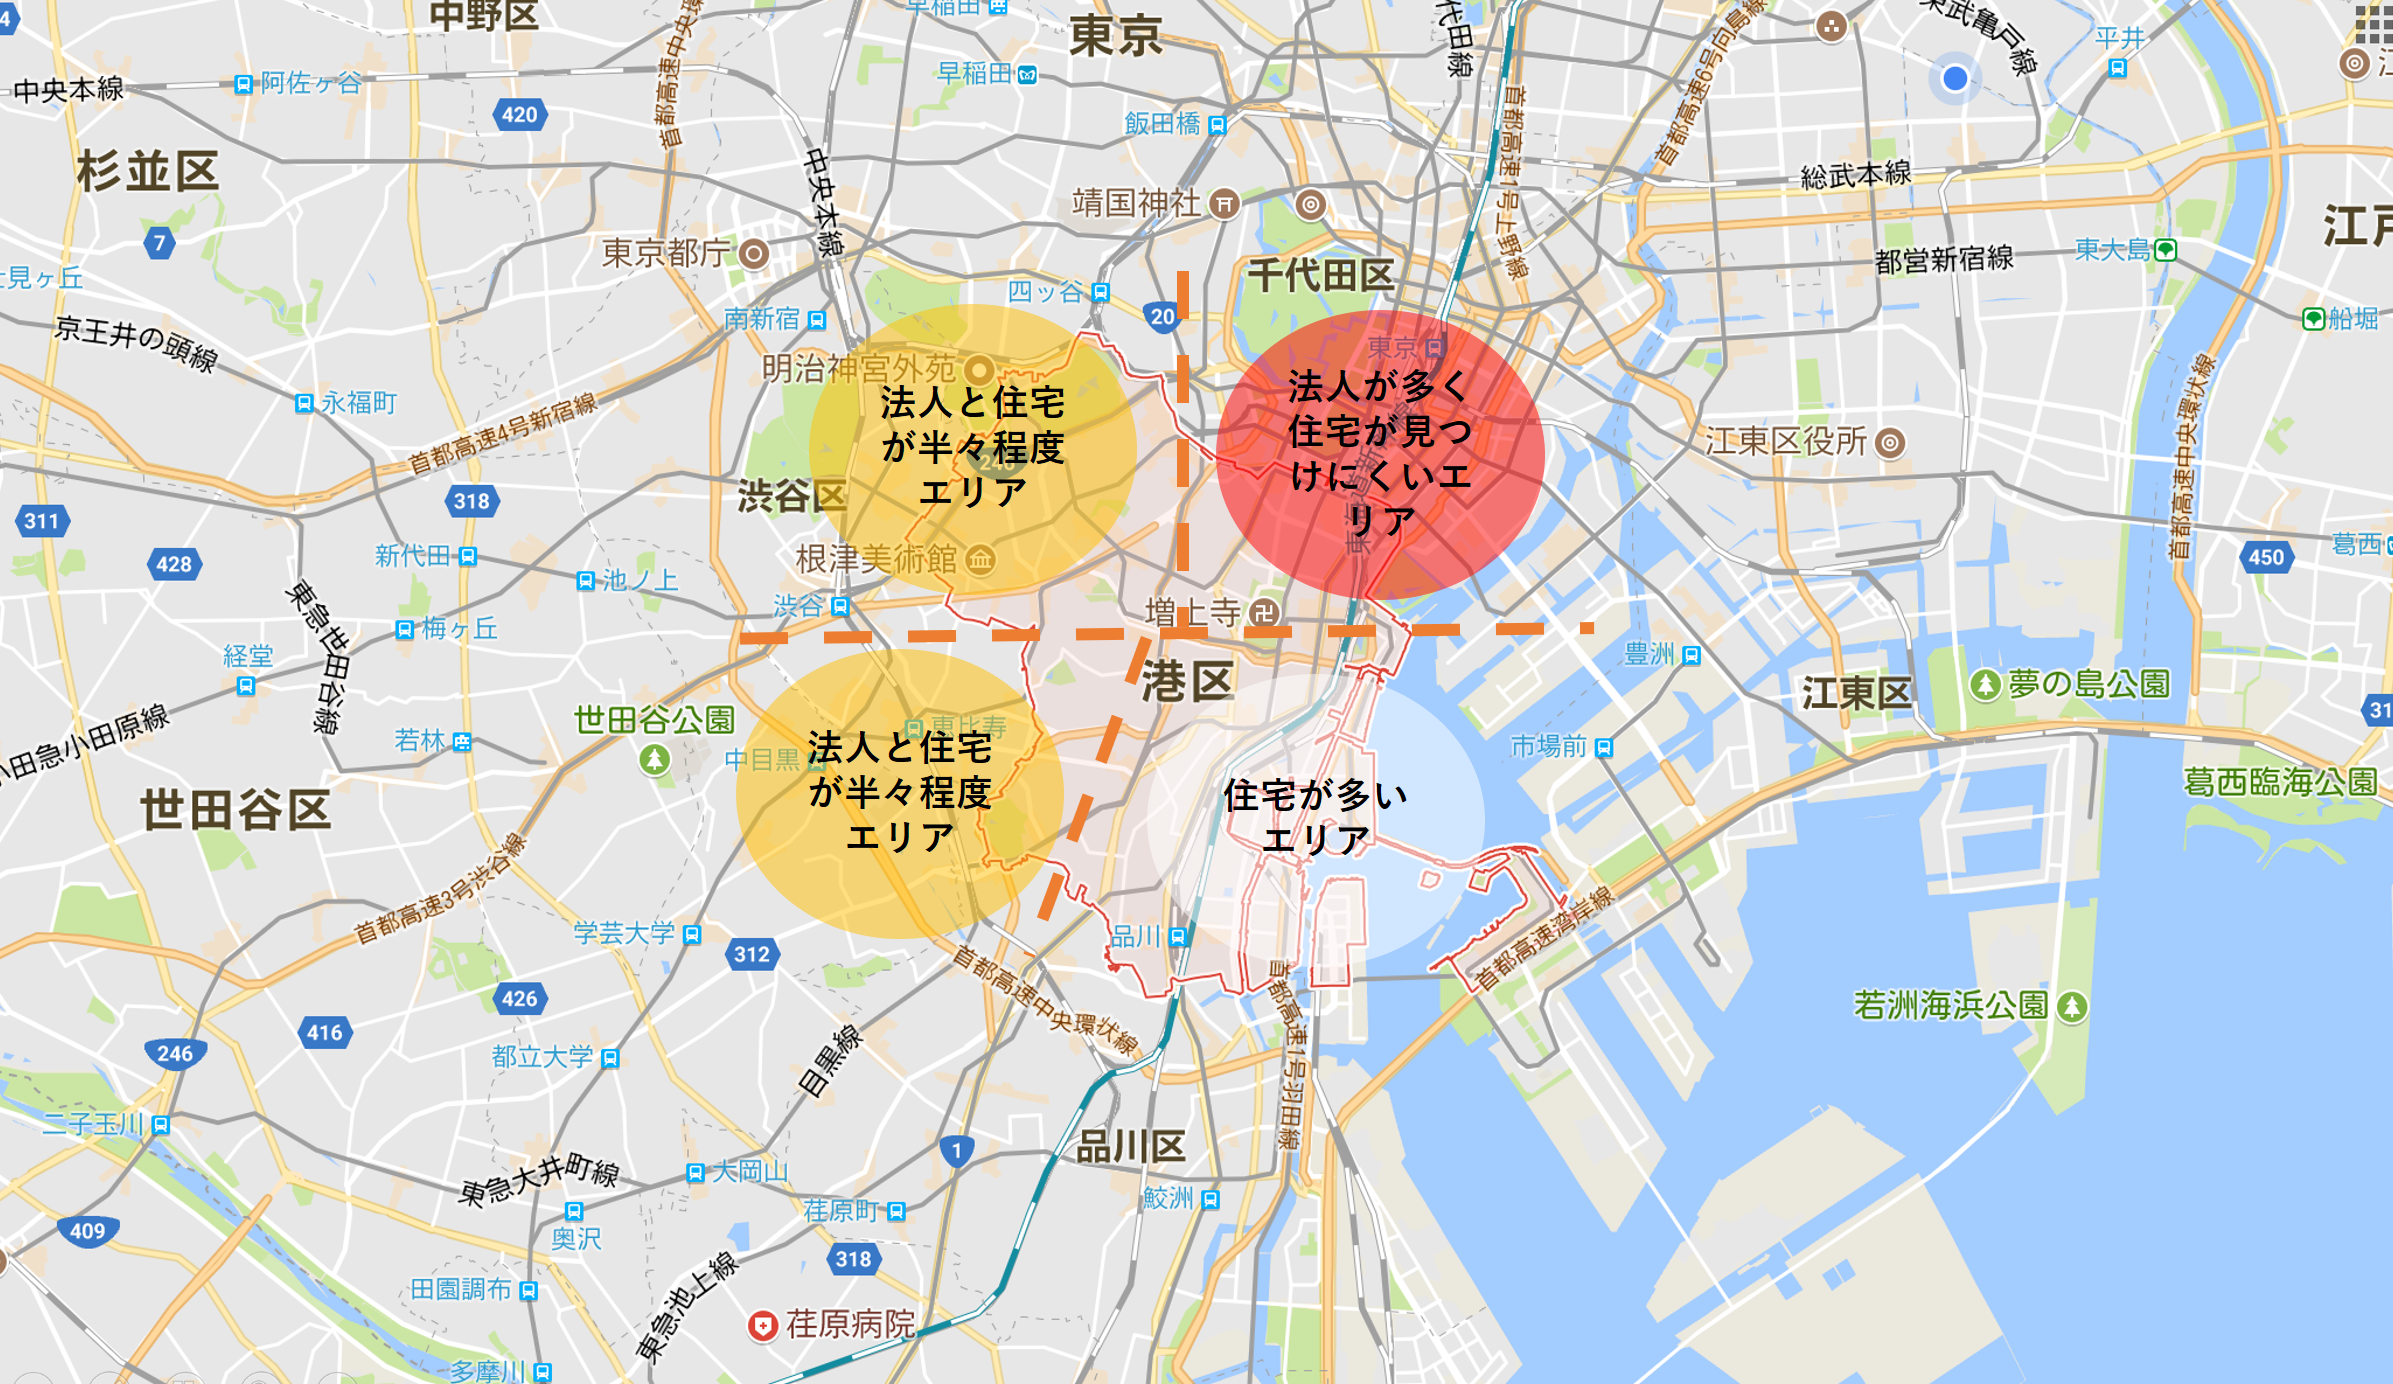 da9c546bb28df1364d0edce3980143c0 - 東京都港区のポスティングで富裕層を狙うために新聞折込部数・軒並み配布・ディマールで比較検証してみる